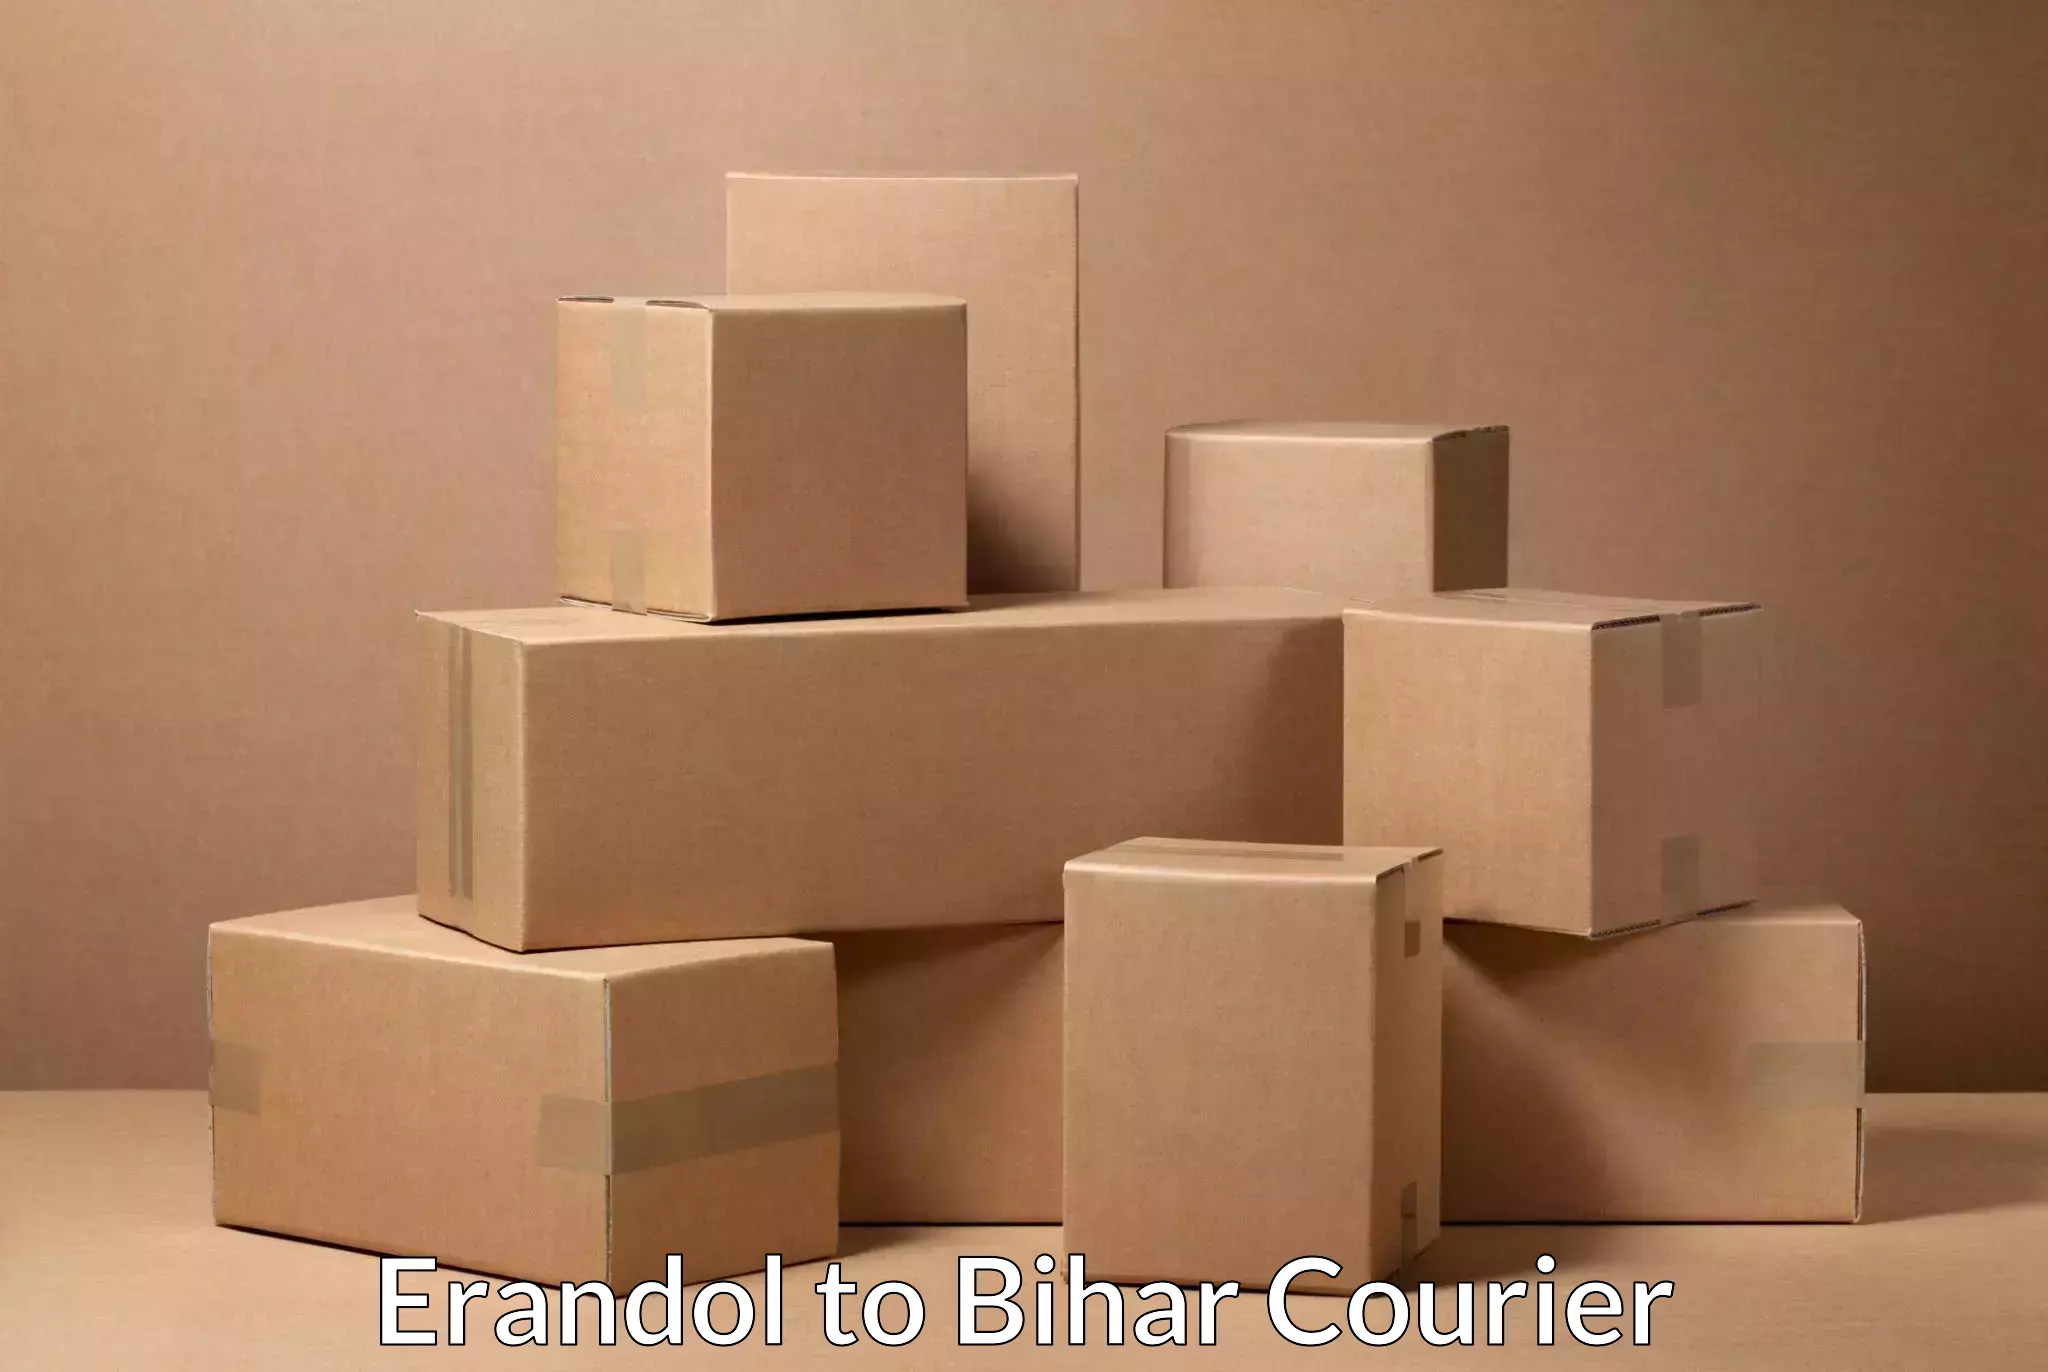 Efficient parcel delivery Erandol to Bihar